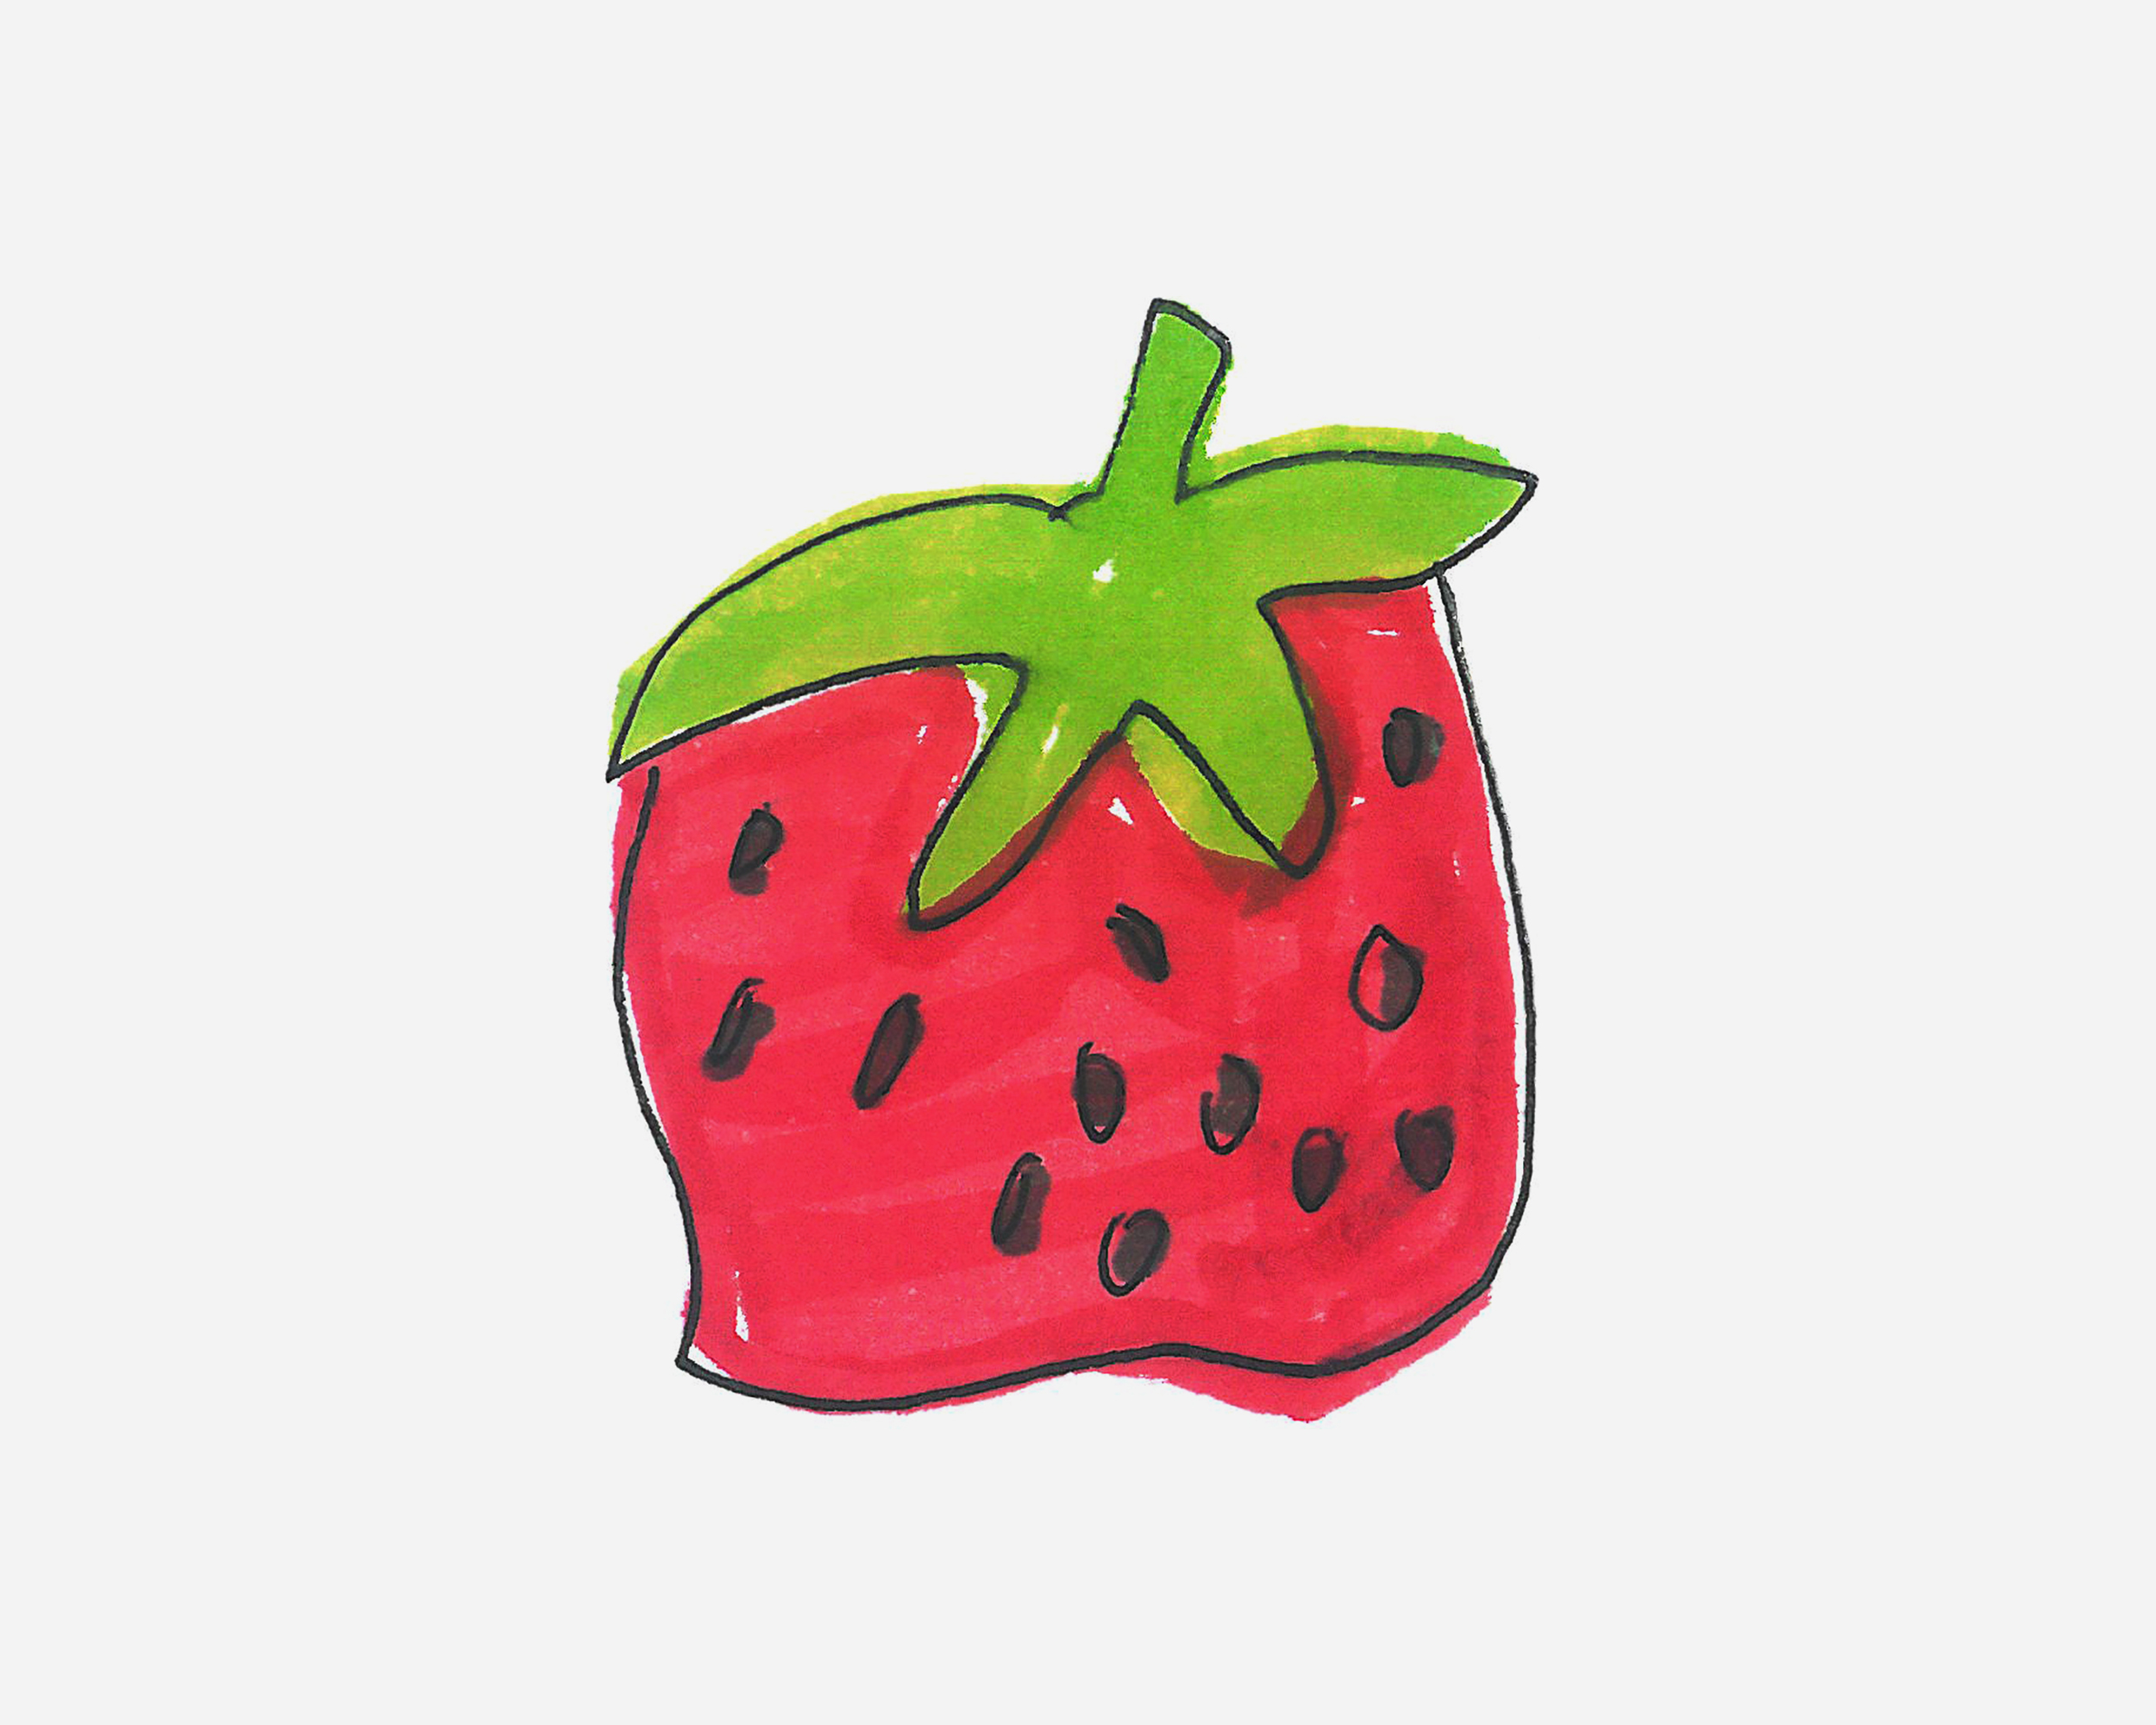 3-6岁简笔画教程 小草莓的画法图解教程